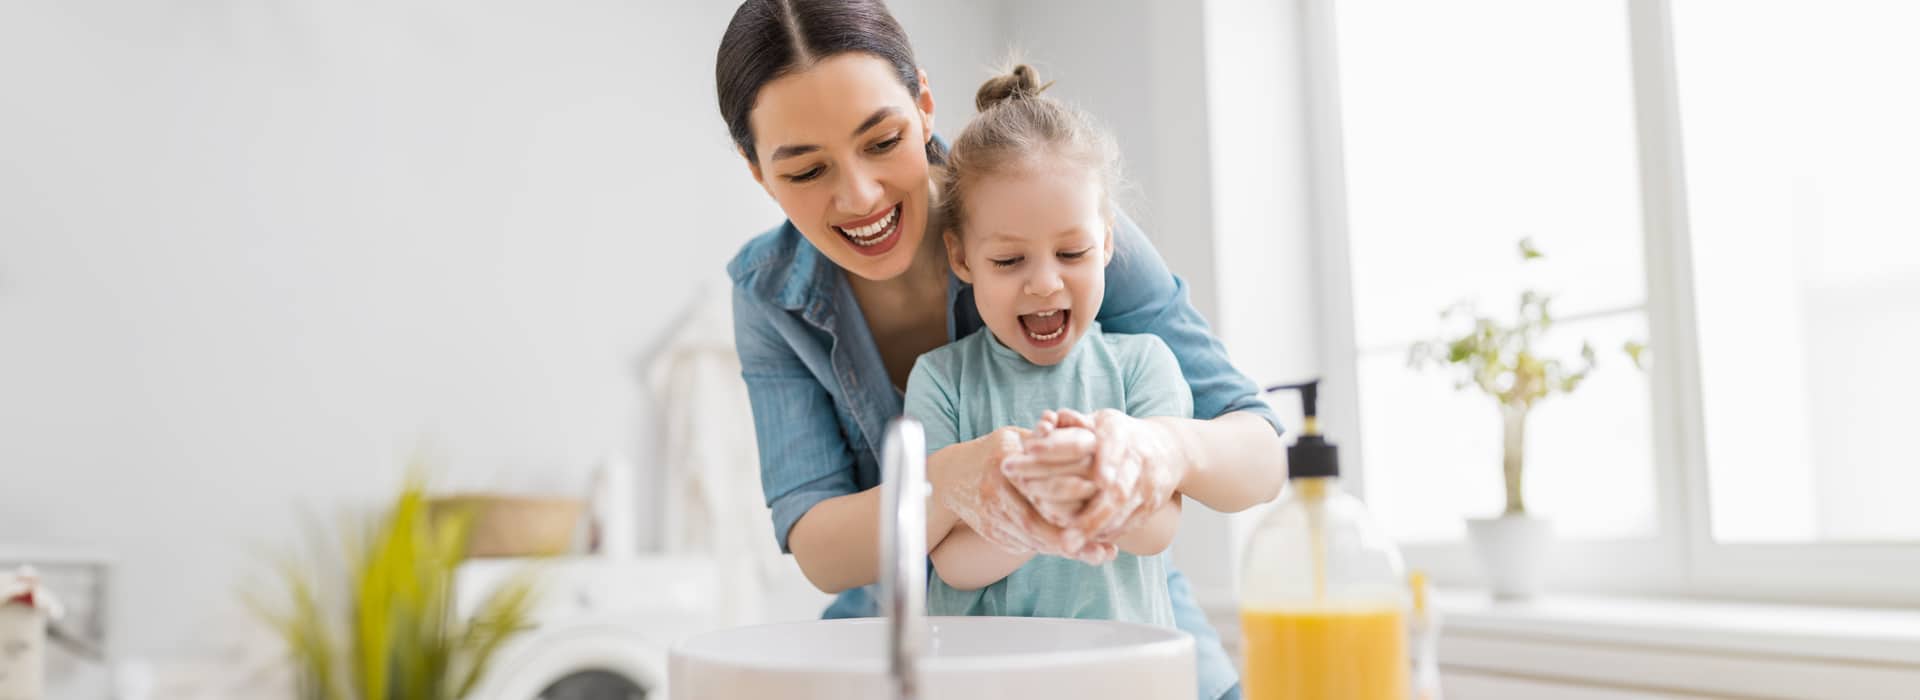 L’importanza dell’igiene personale e come insegnarla ai bambini